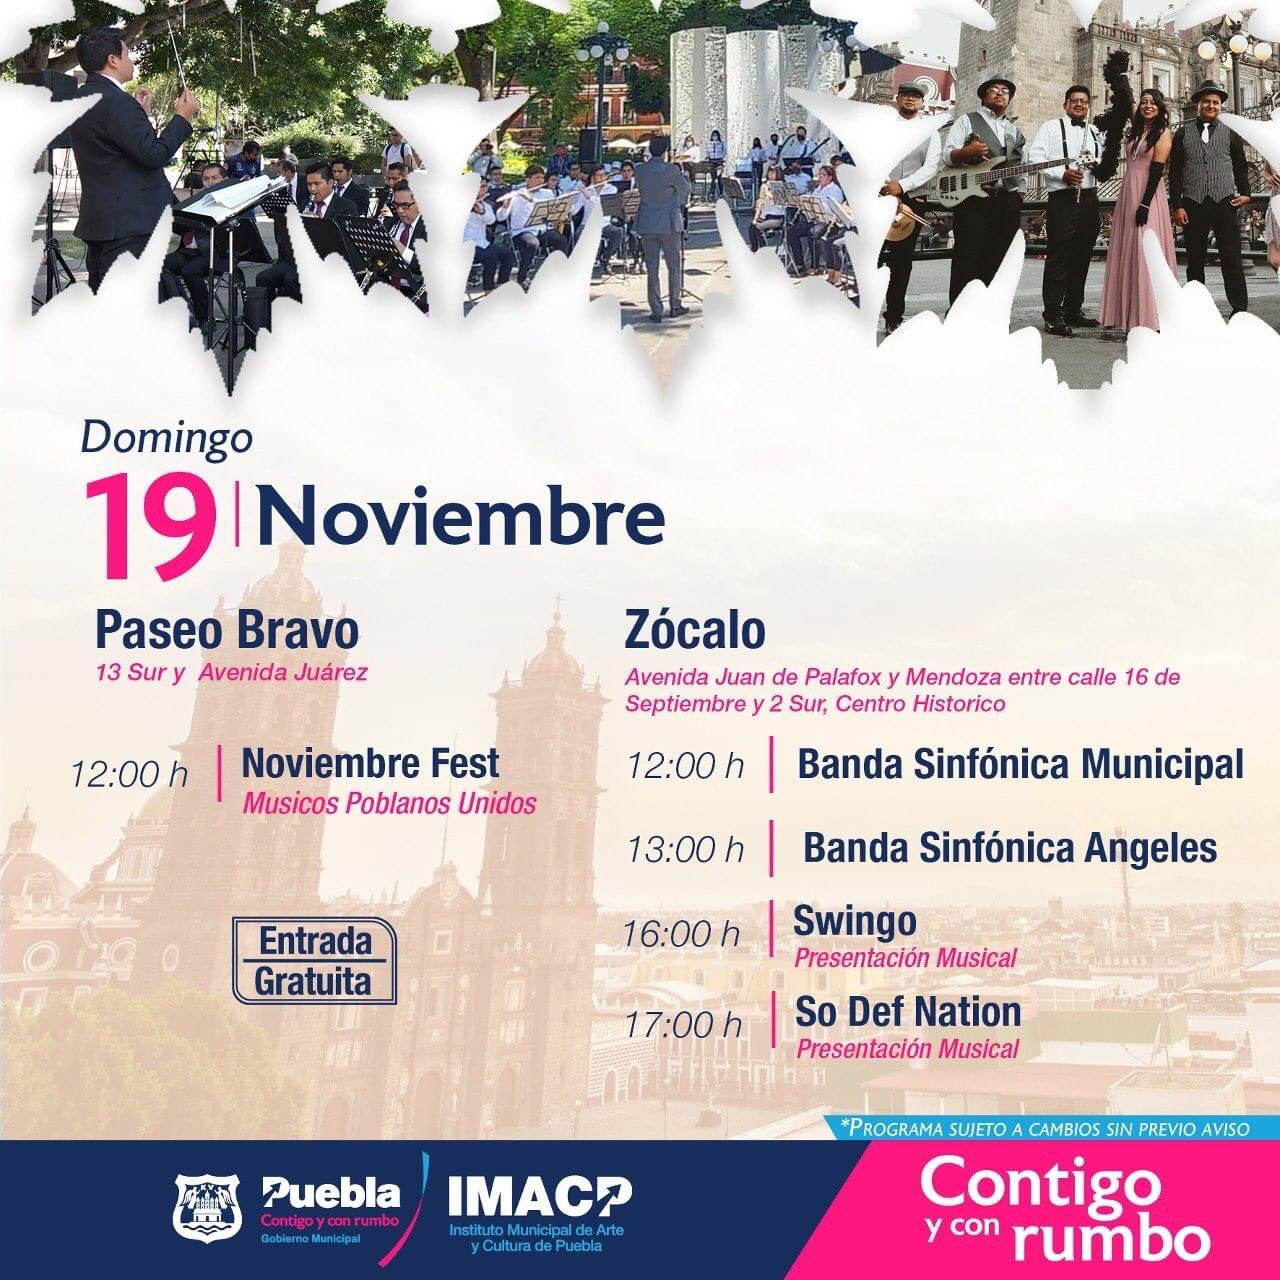 Arte y cultura este fin de semana en Puebla capital